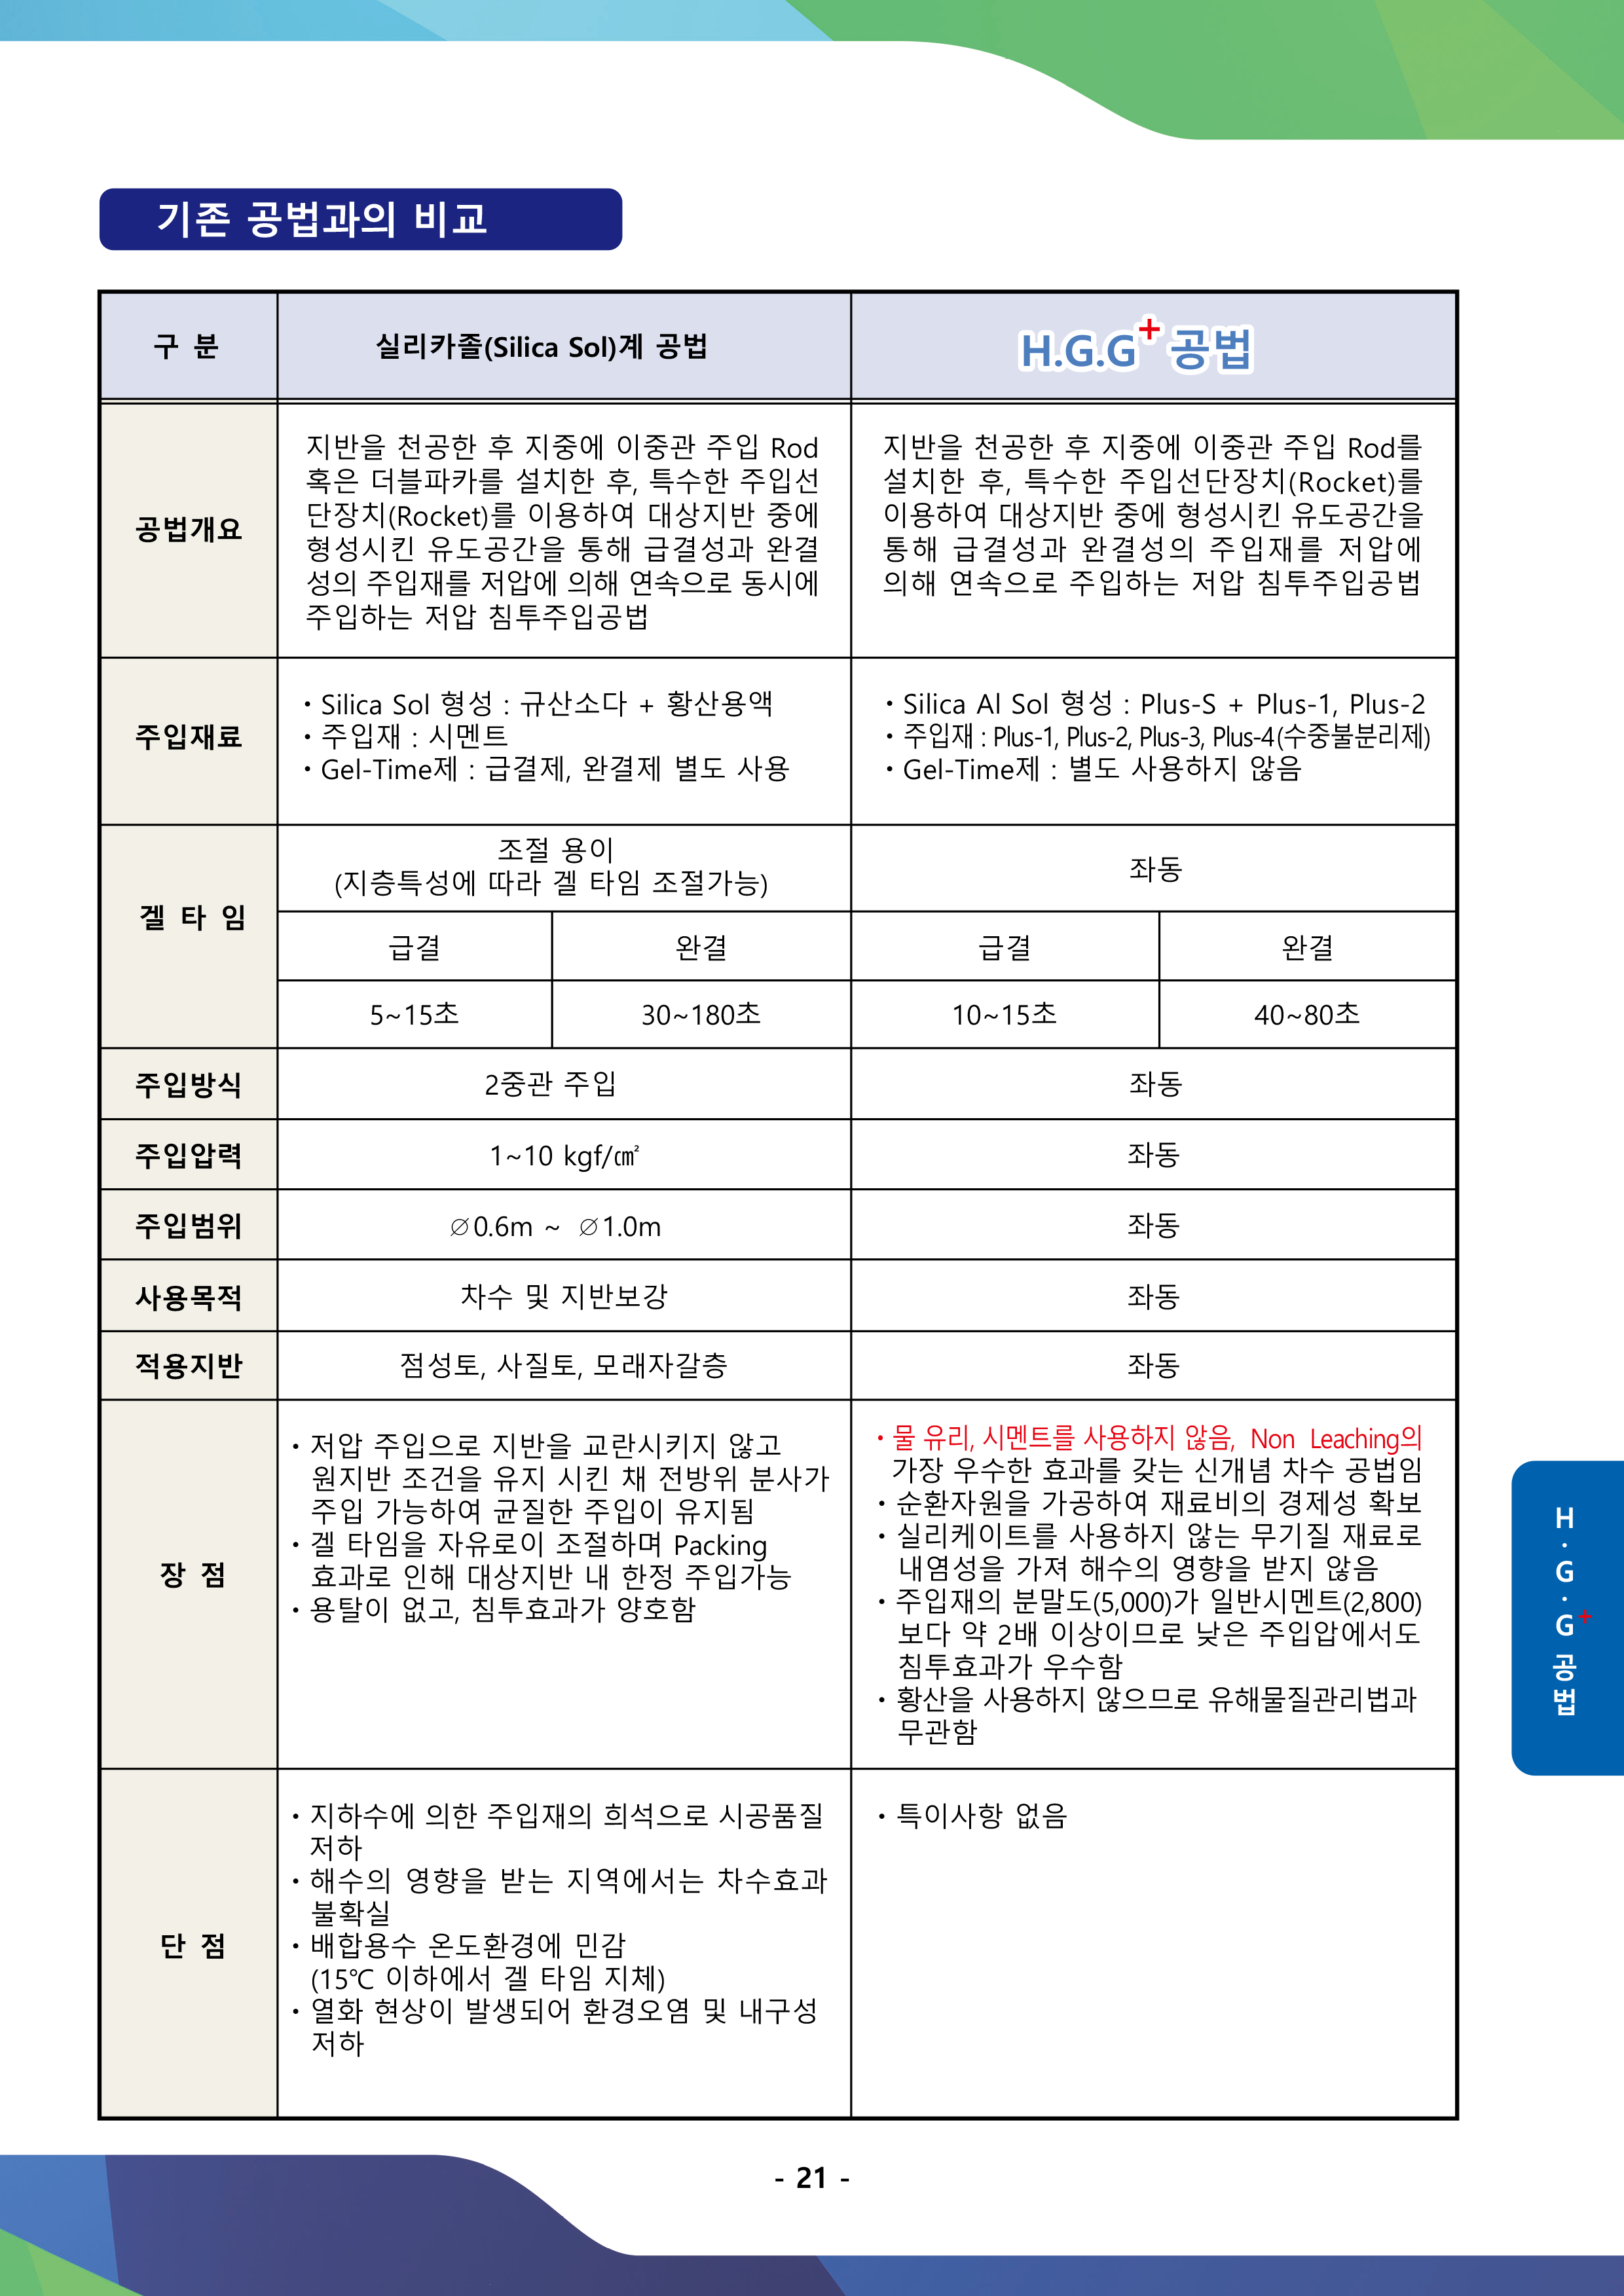 백경지앤씨-회사소개-및-업무안내-카다로그-(2)-21.png